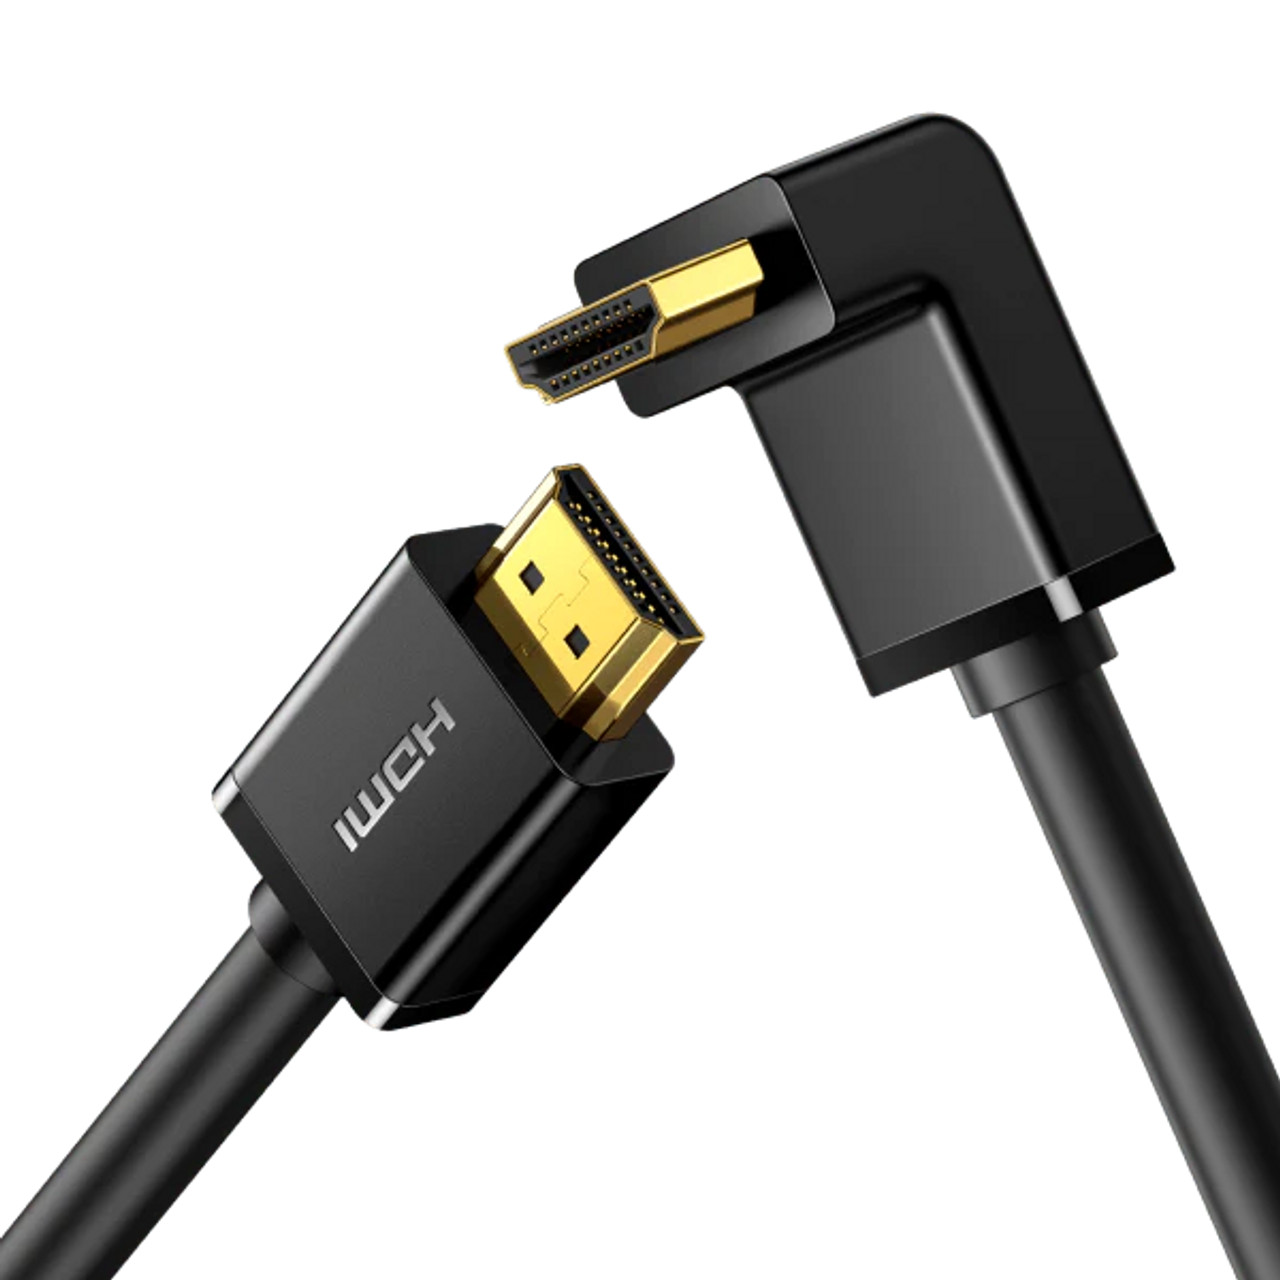 Câble ELECTRO DÉPÔT HDMI /mini HDMI 1.5m - Electro Dépôt